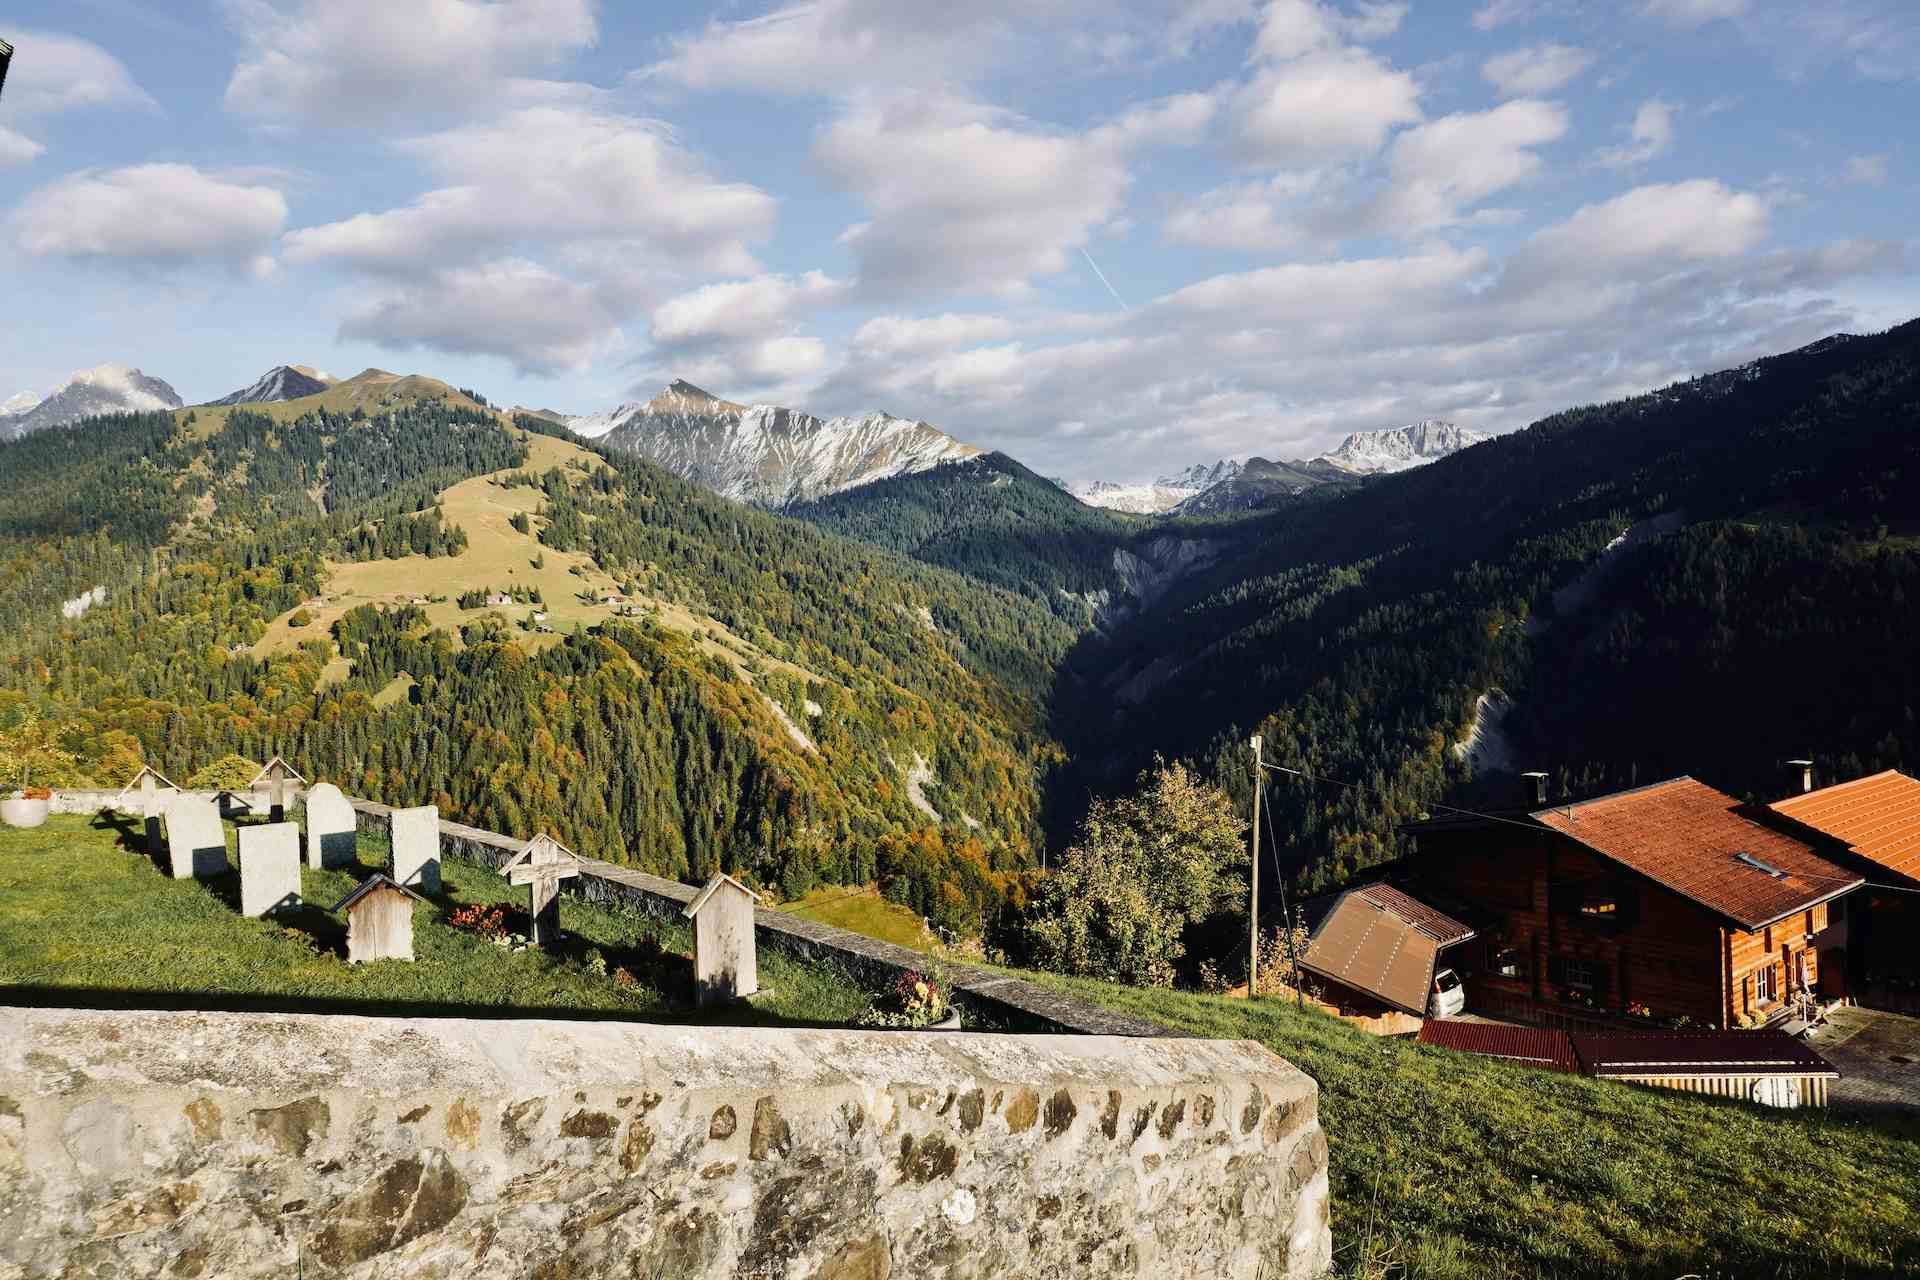 Gutsbetrieb Plankis, producer in Chur canton of Graubünden in Switzerland